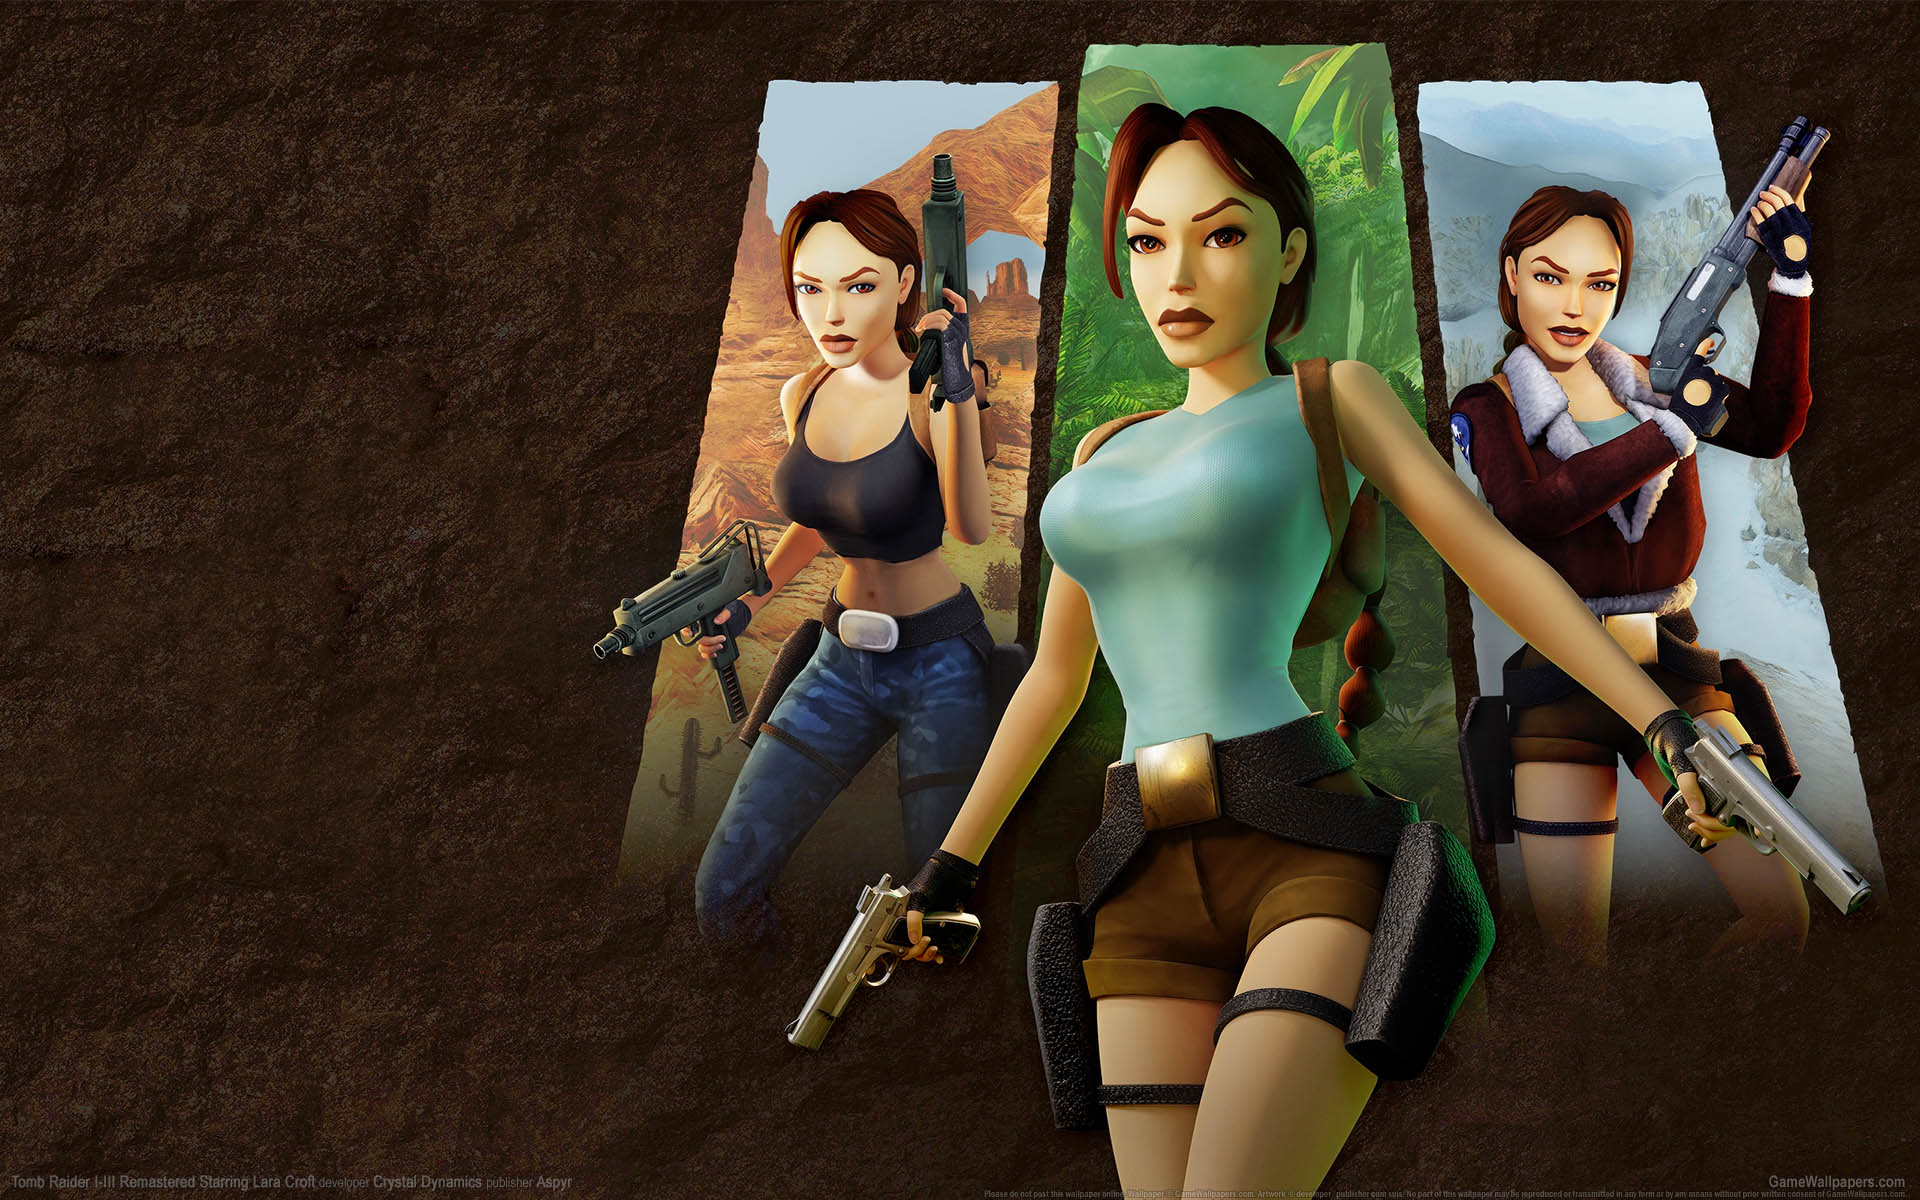 Tomb Raider I-III Remastered Starring Lara Croft fond d'cran 01 1920x1200